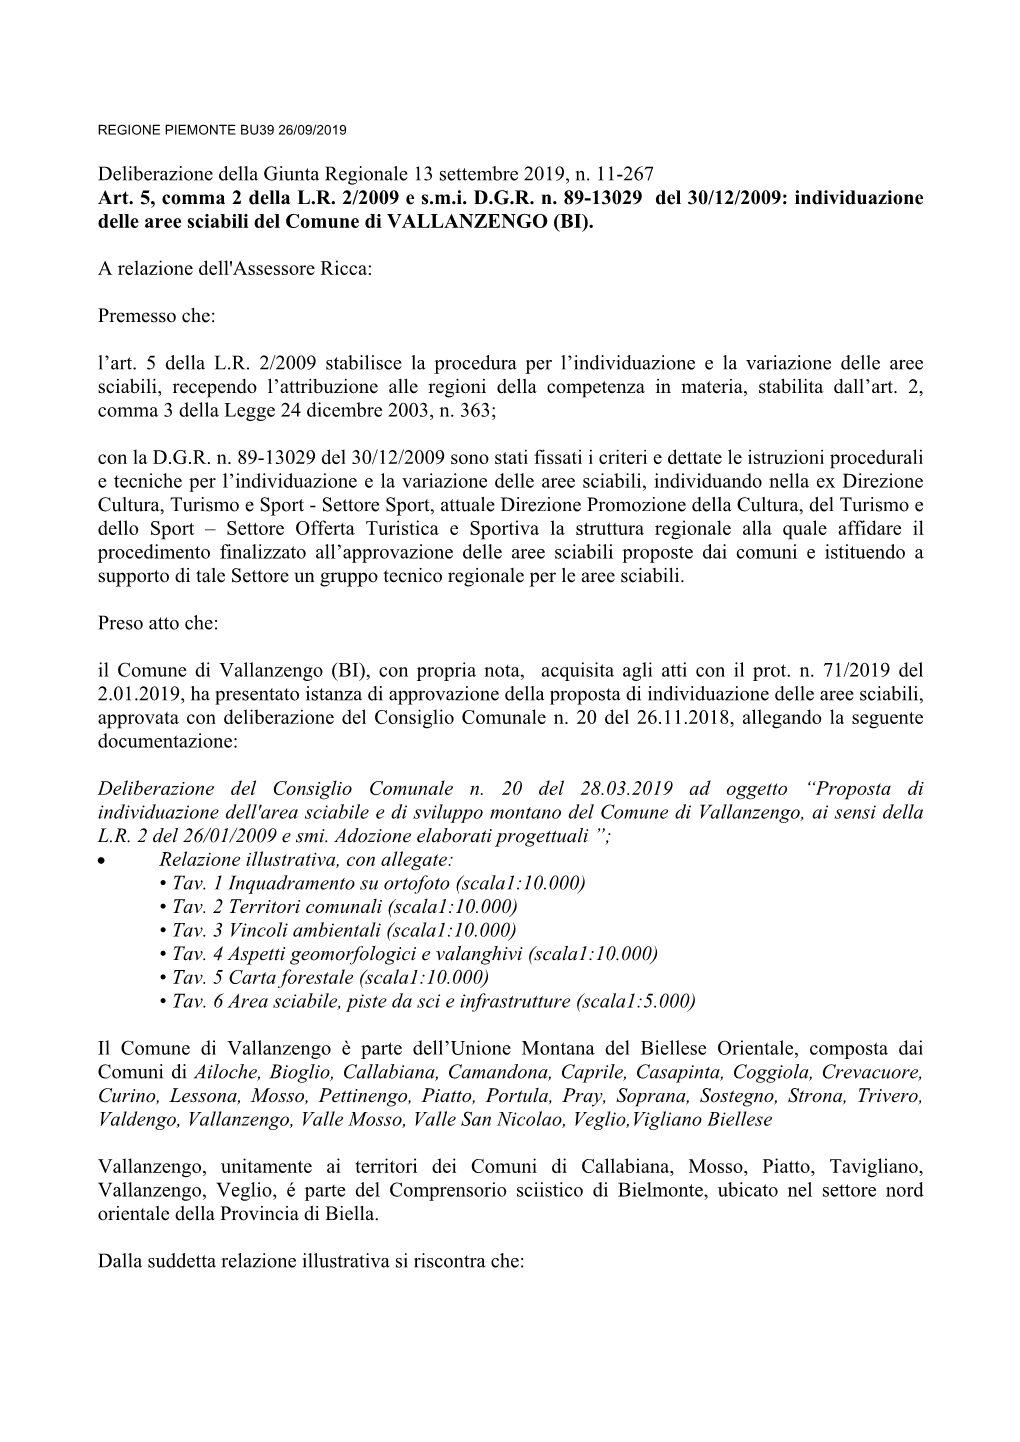 Deliberazione Della Giunta Regionale 13 Settembre 2019, N. 11-267 Art. 5, Comma 2 Della L.R